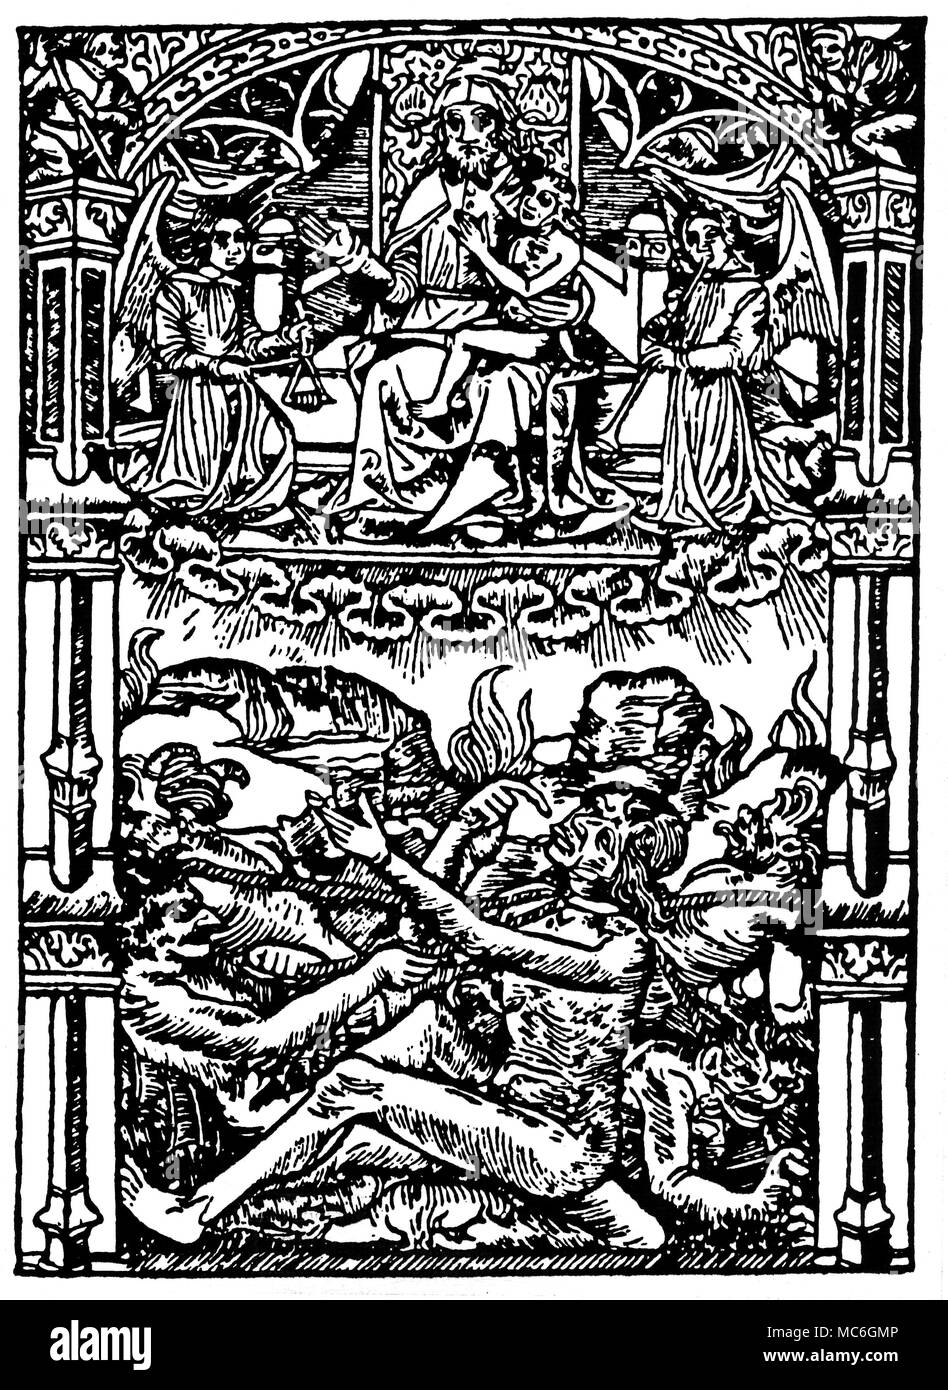 WITCHCRAFT - martello delle streghe - Inferno xilografia da una edizione  del Malleus Maleficarum, 1497. Il Malleus Maleficarum, o martello delle  streghe è di gran lunga il più influente lavoro sulla stregoneria